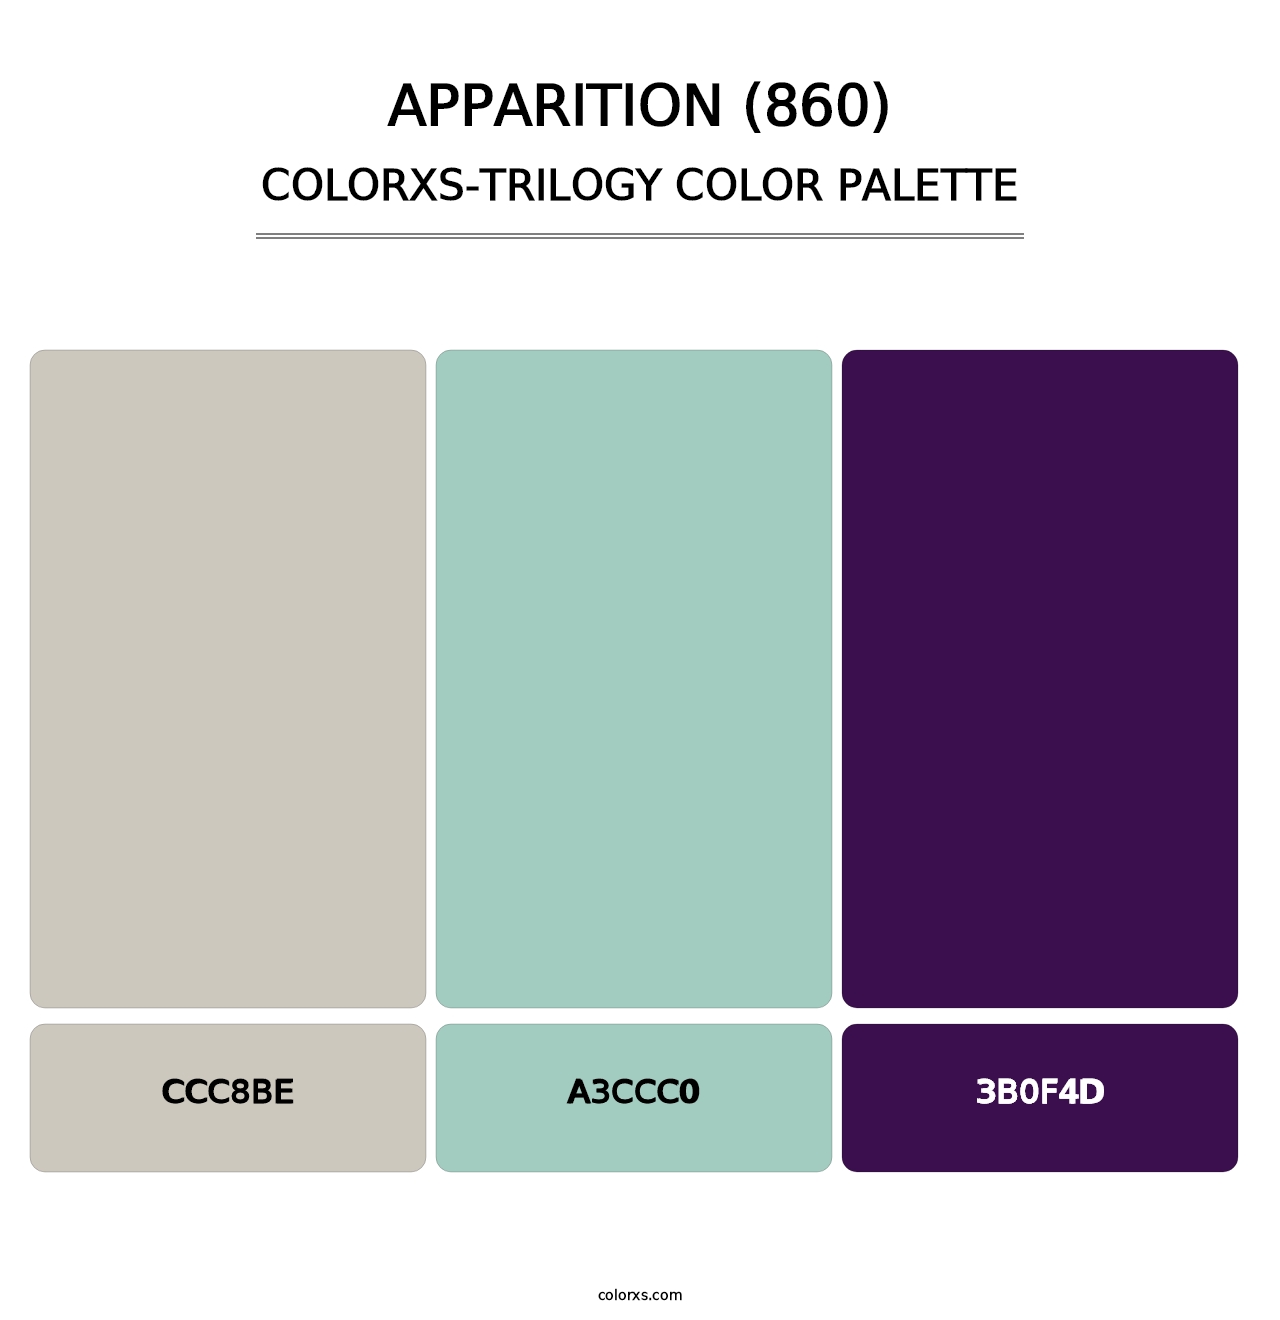 Apparition (860) - Colorxs Trilogy Palette